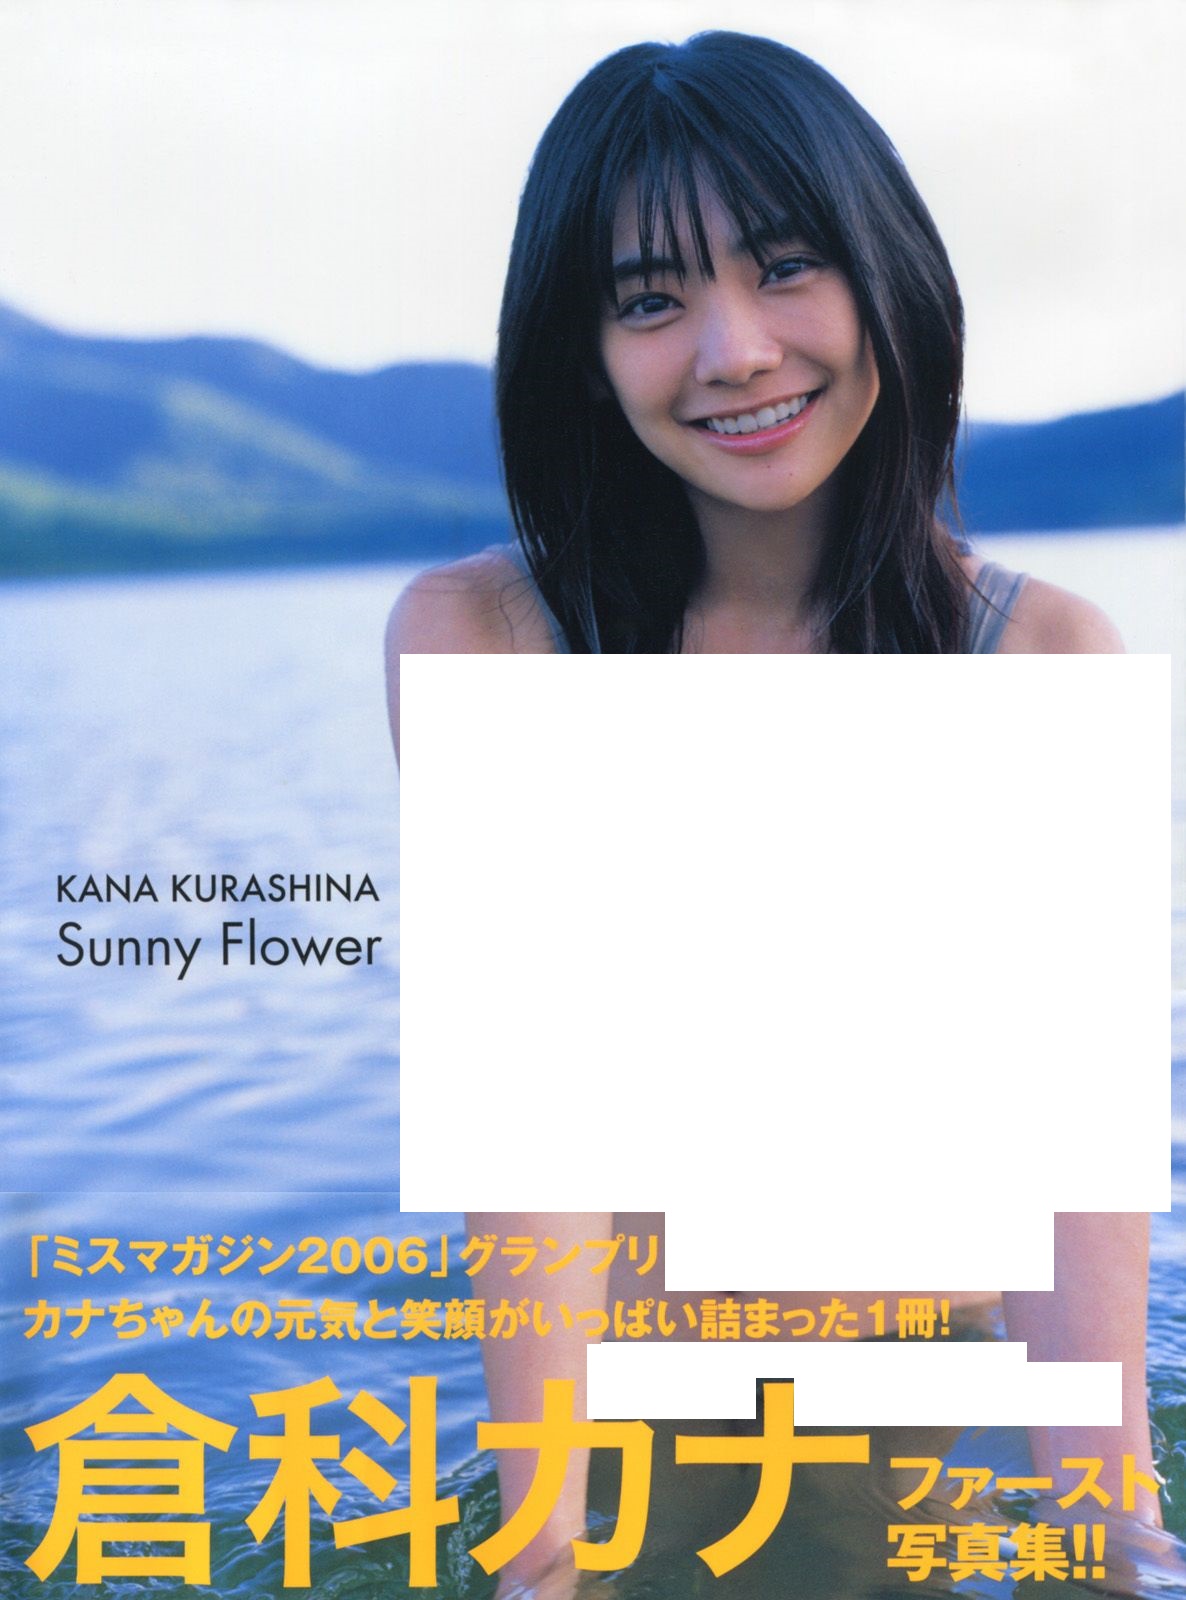 일본의 친한파 뒹굴녀 쿠라시나 카나(倉科カナ) 20대 리즈 시절 찍은 그라비아 화보 써니 플라워(Sunny Flower)